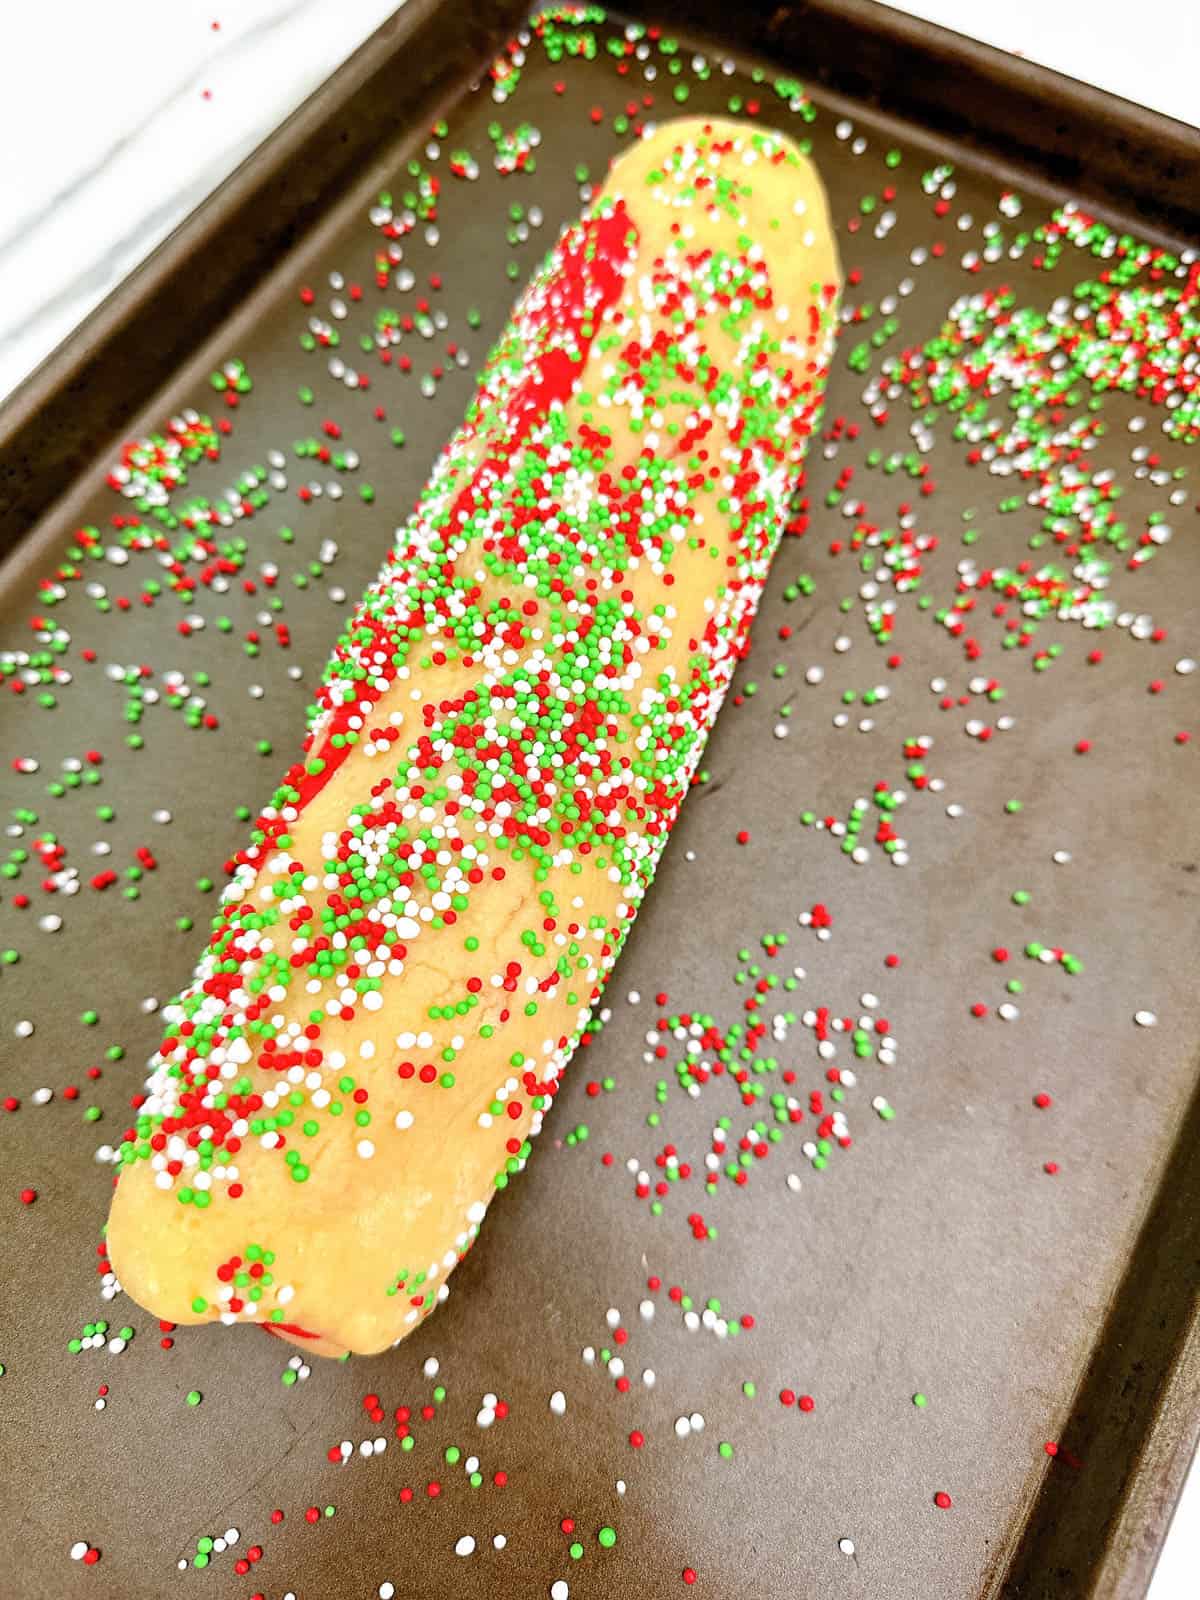 Rolling cookie dough in sprinkles.